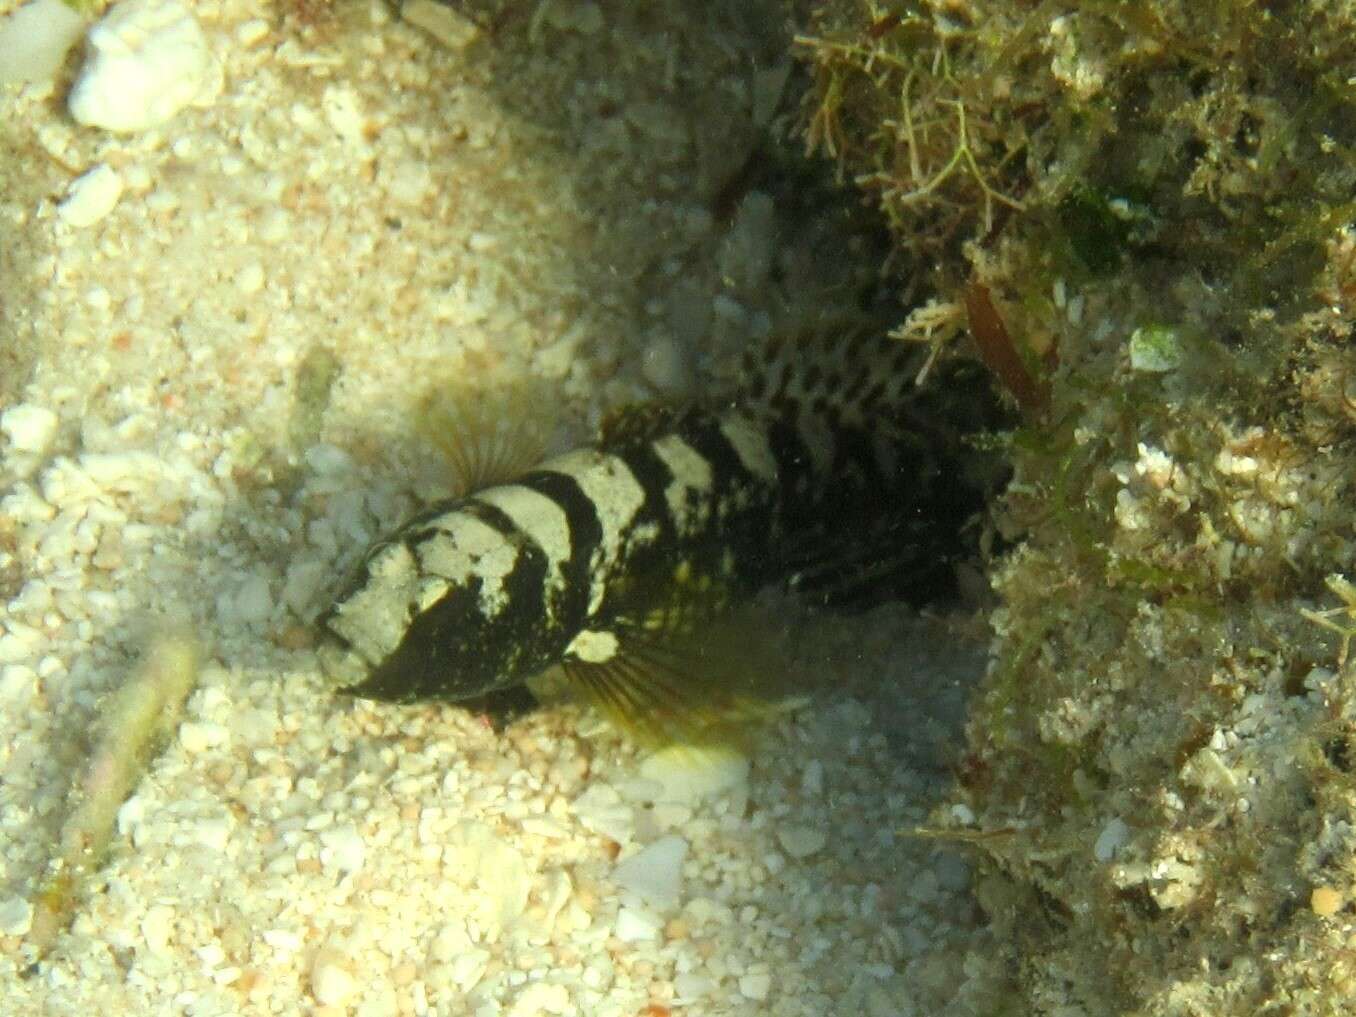 Image of Prawn-goby prawngoby shrimp-goby